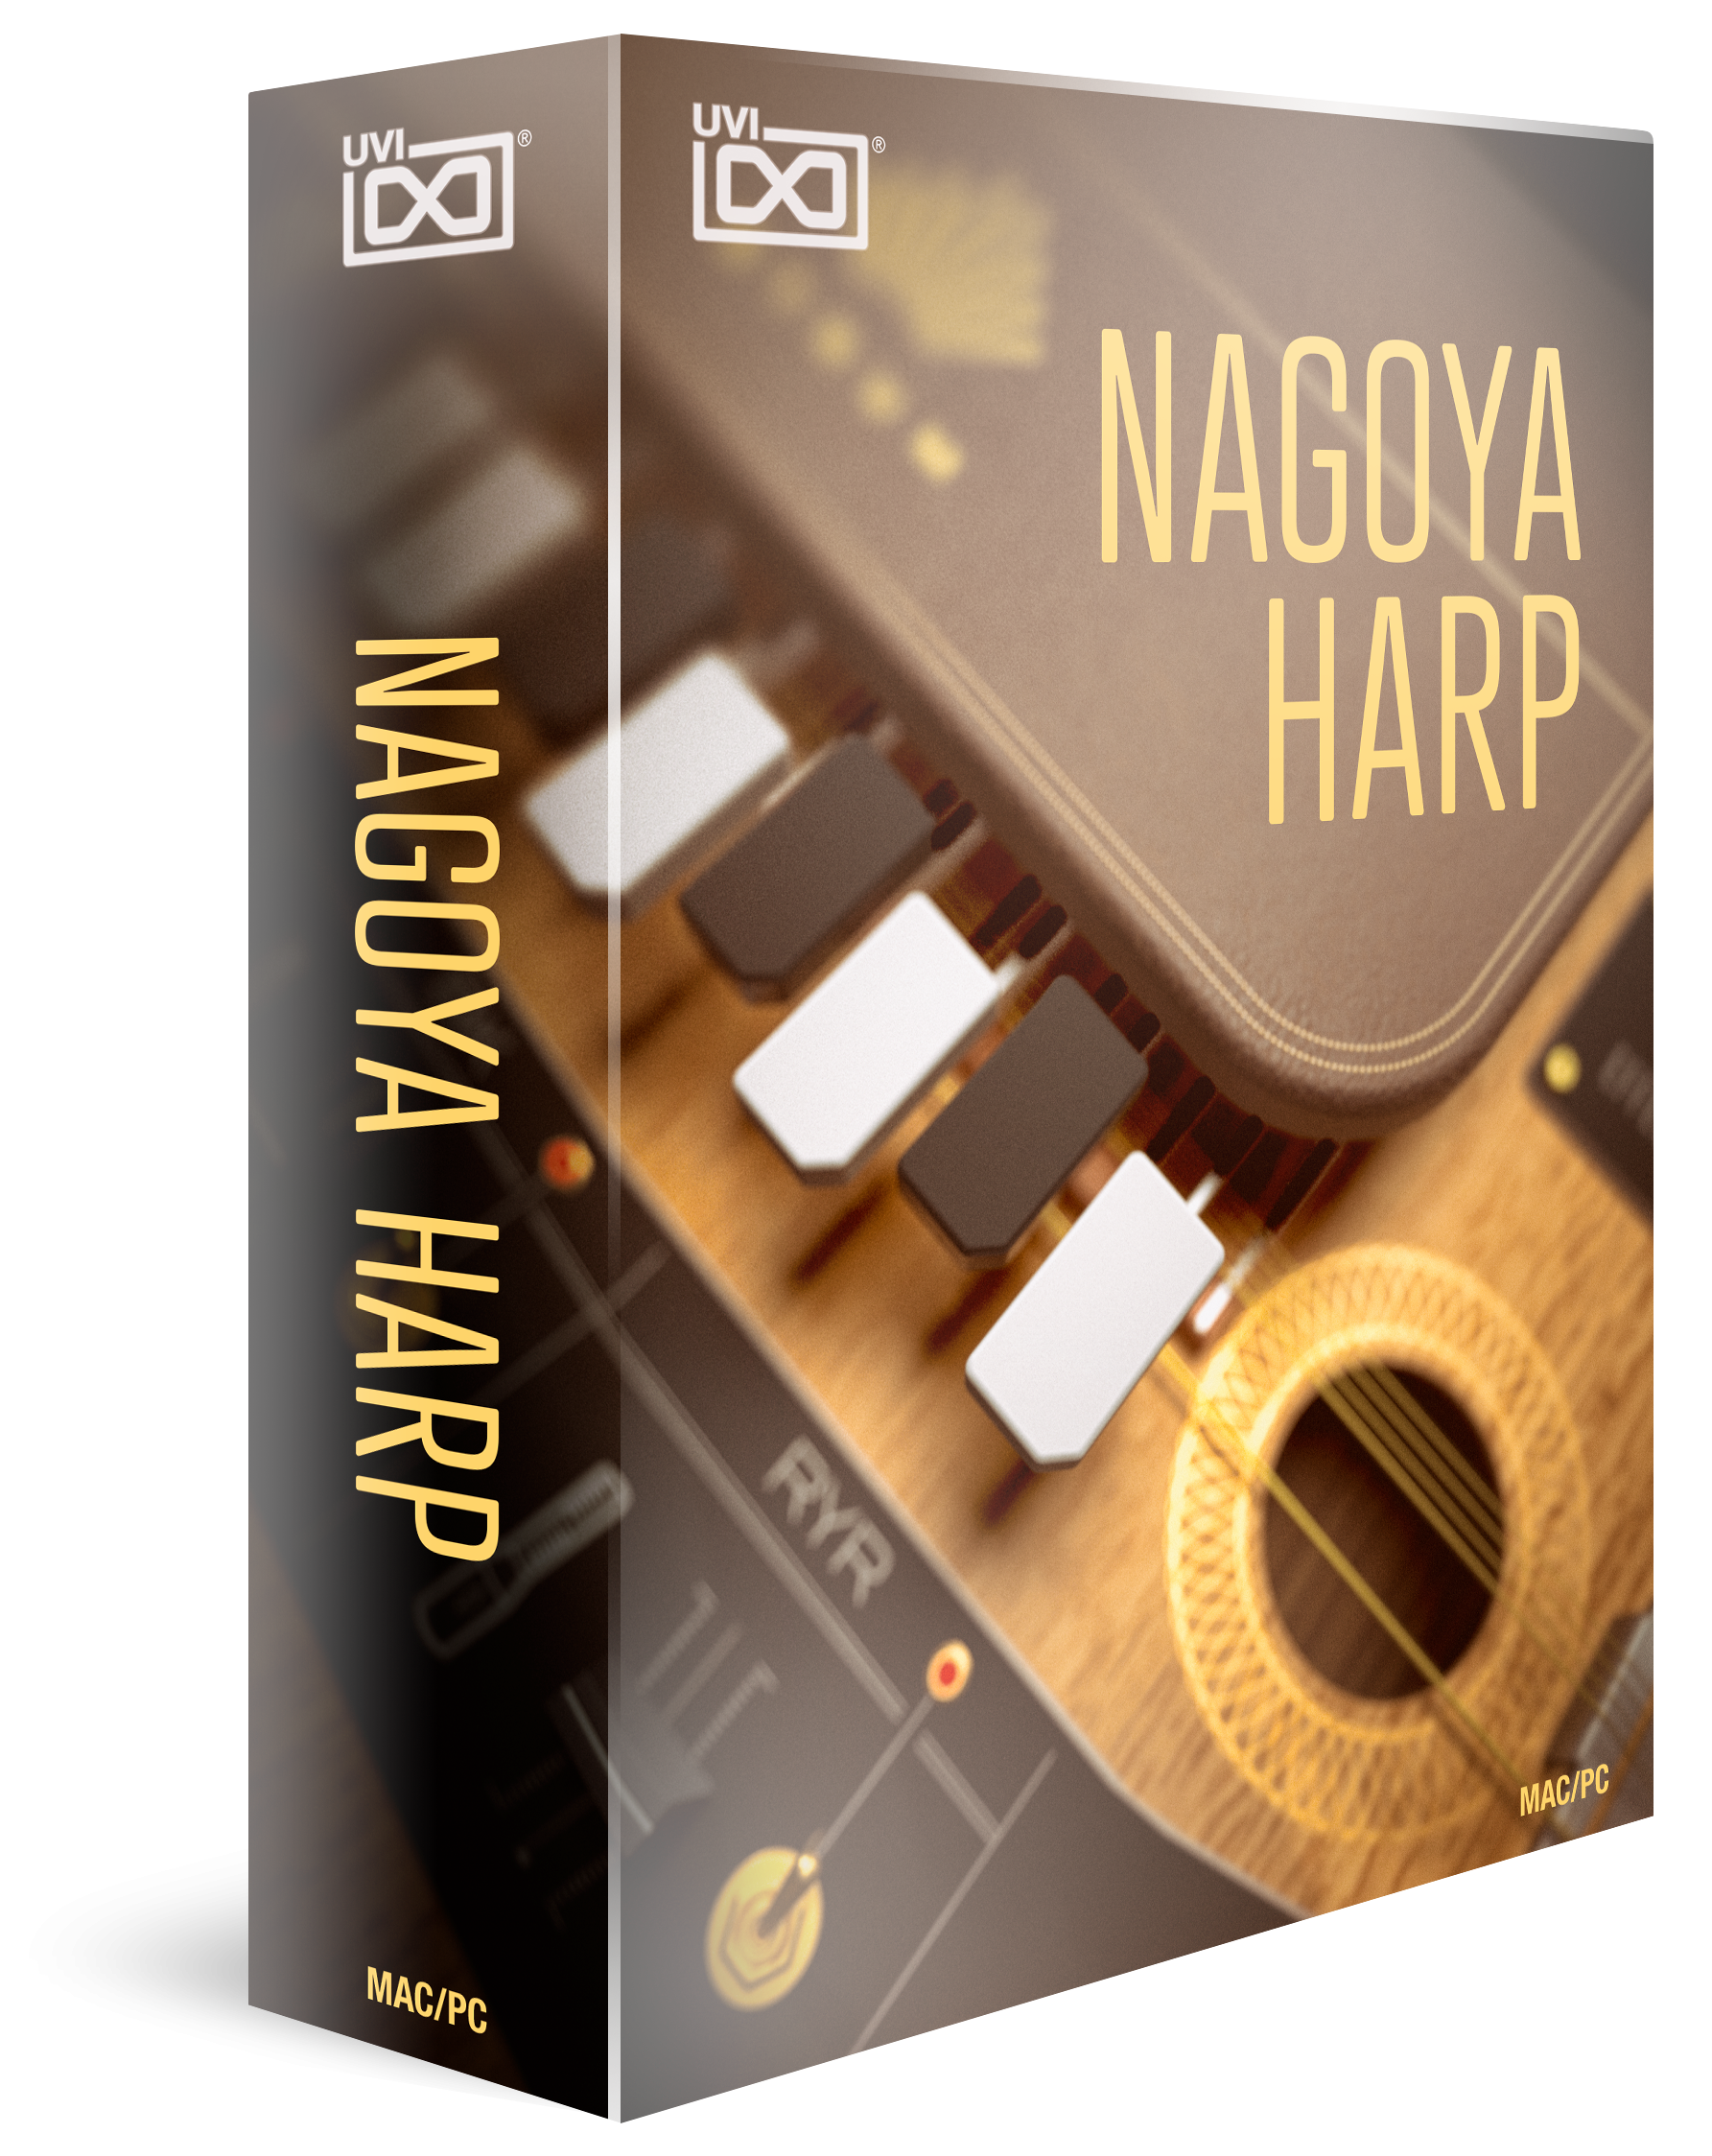 Nagoya Harp